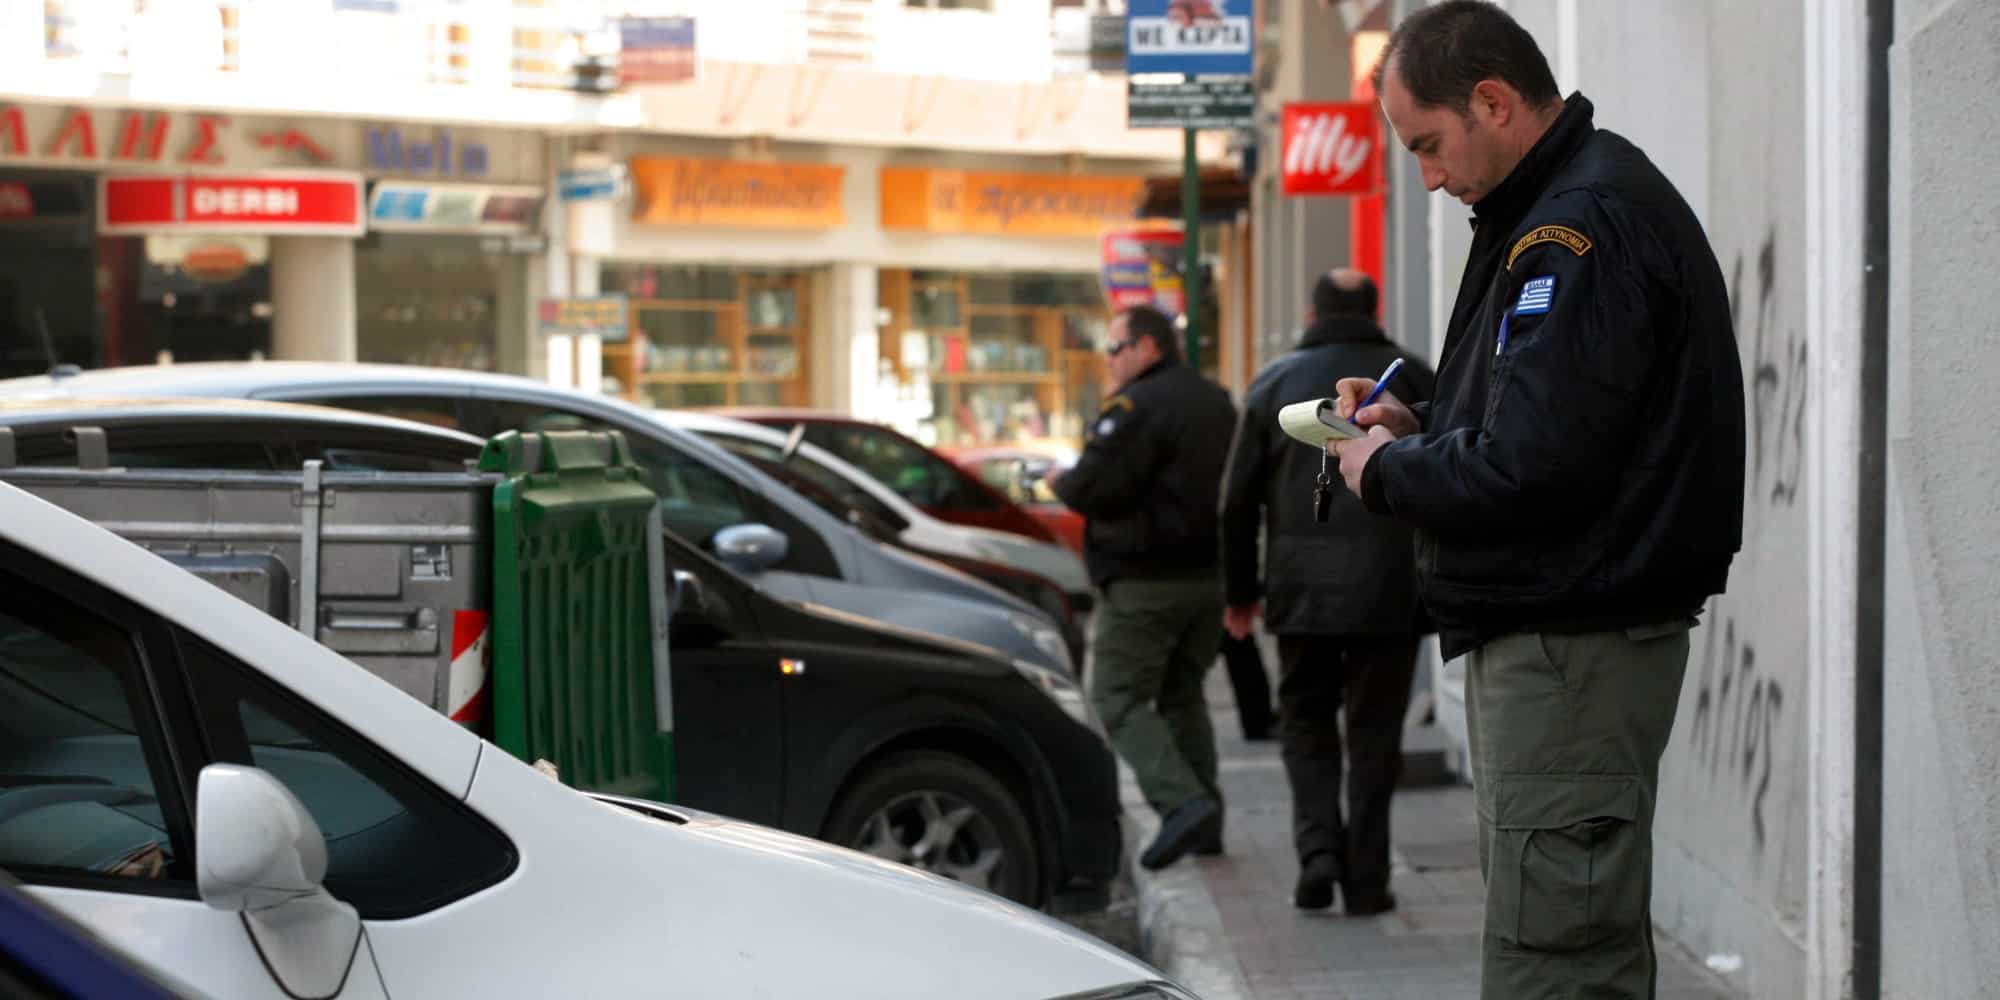 Αστυνομικός γράφει αυτοκίνητο για παράνομο παρκάρισμα